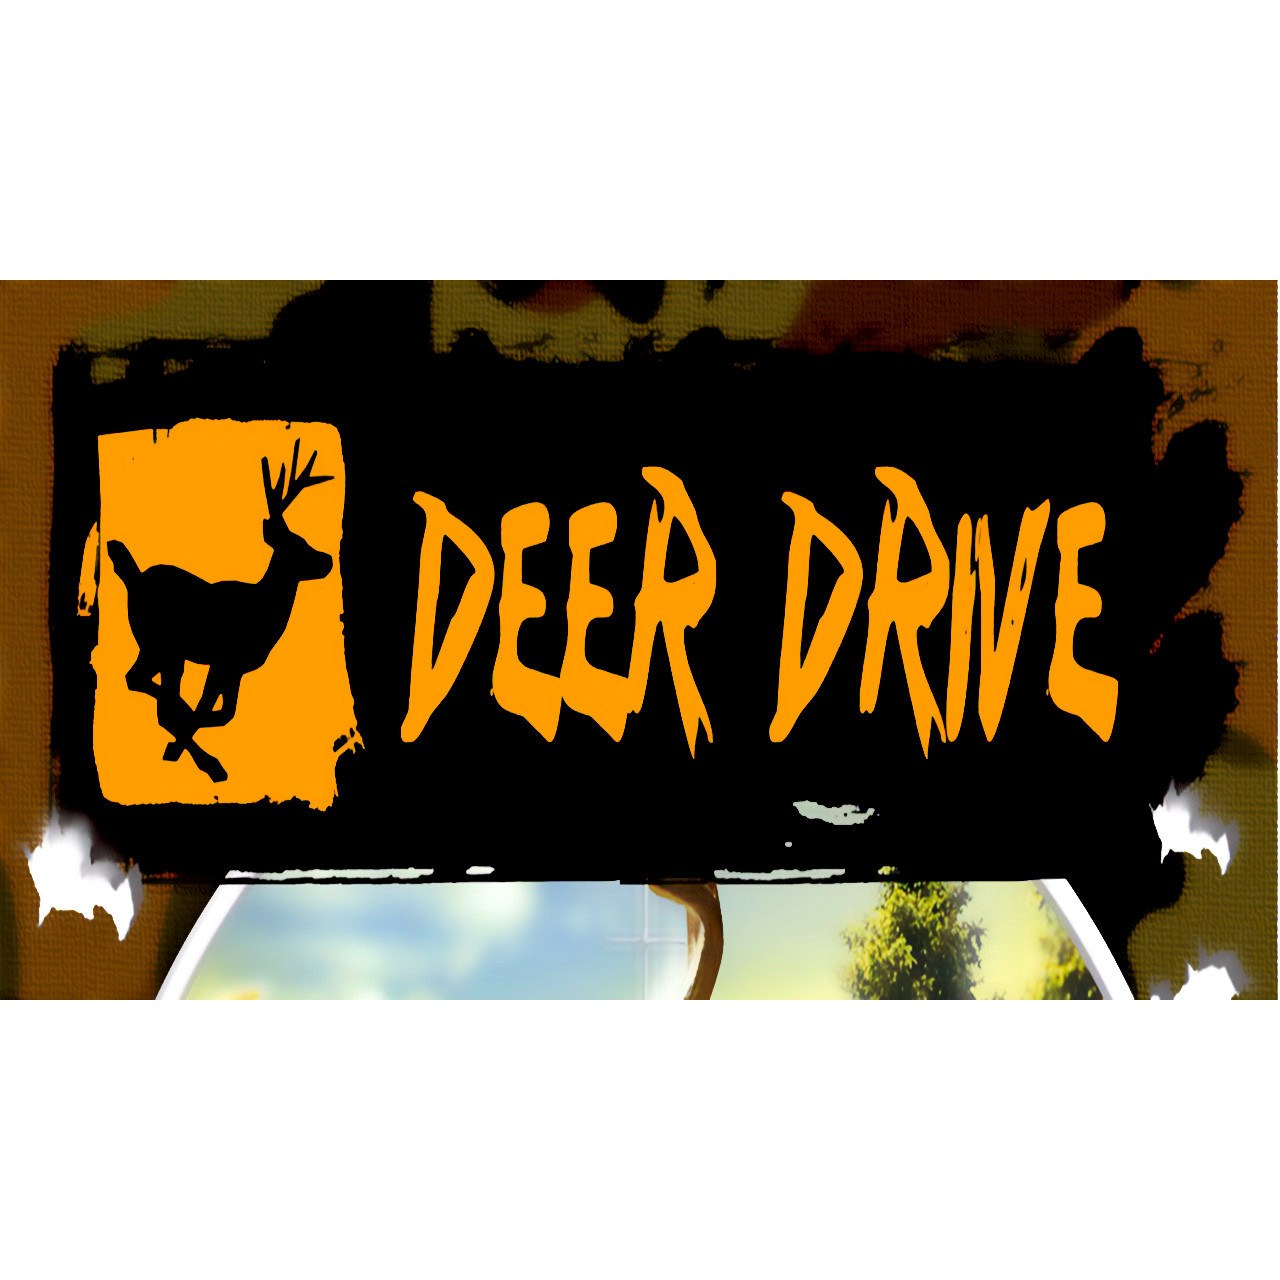 deer drive free games